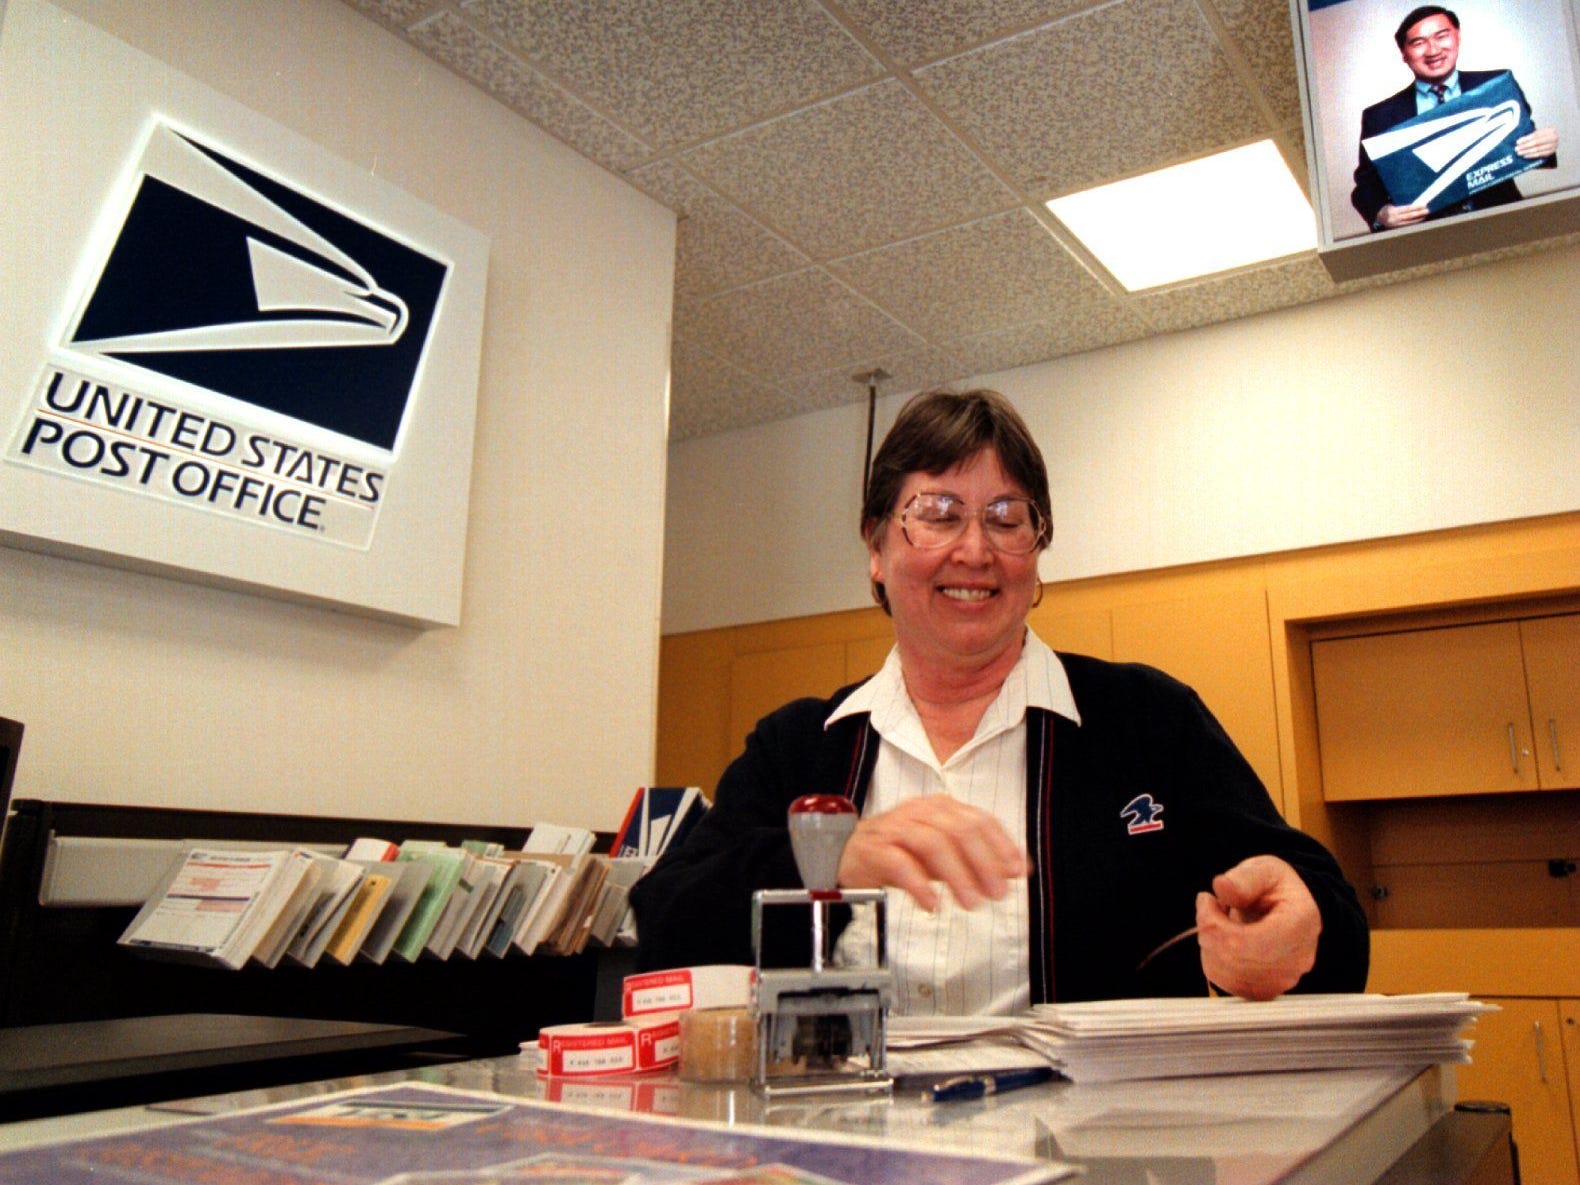 Ein Postangestellter trägt 1998 eine Strickjacke